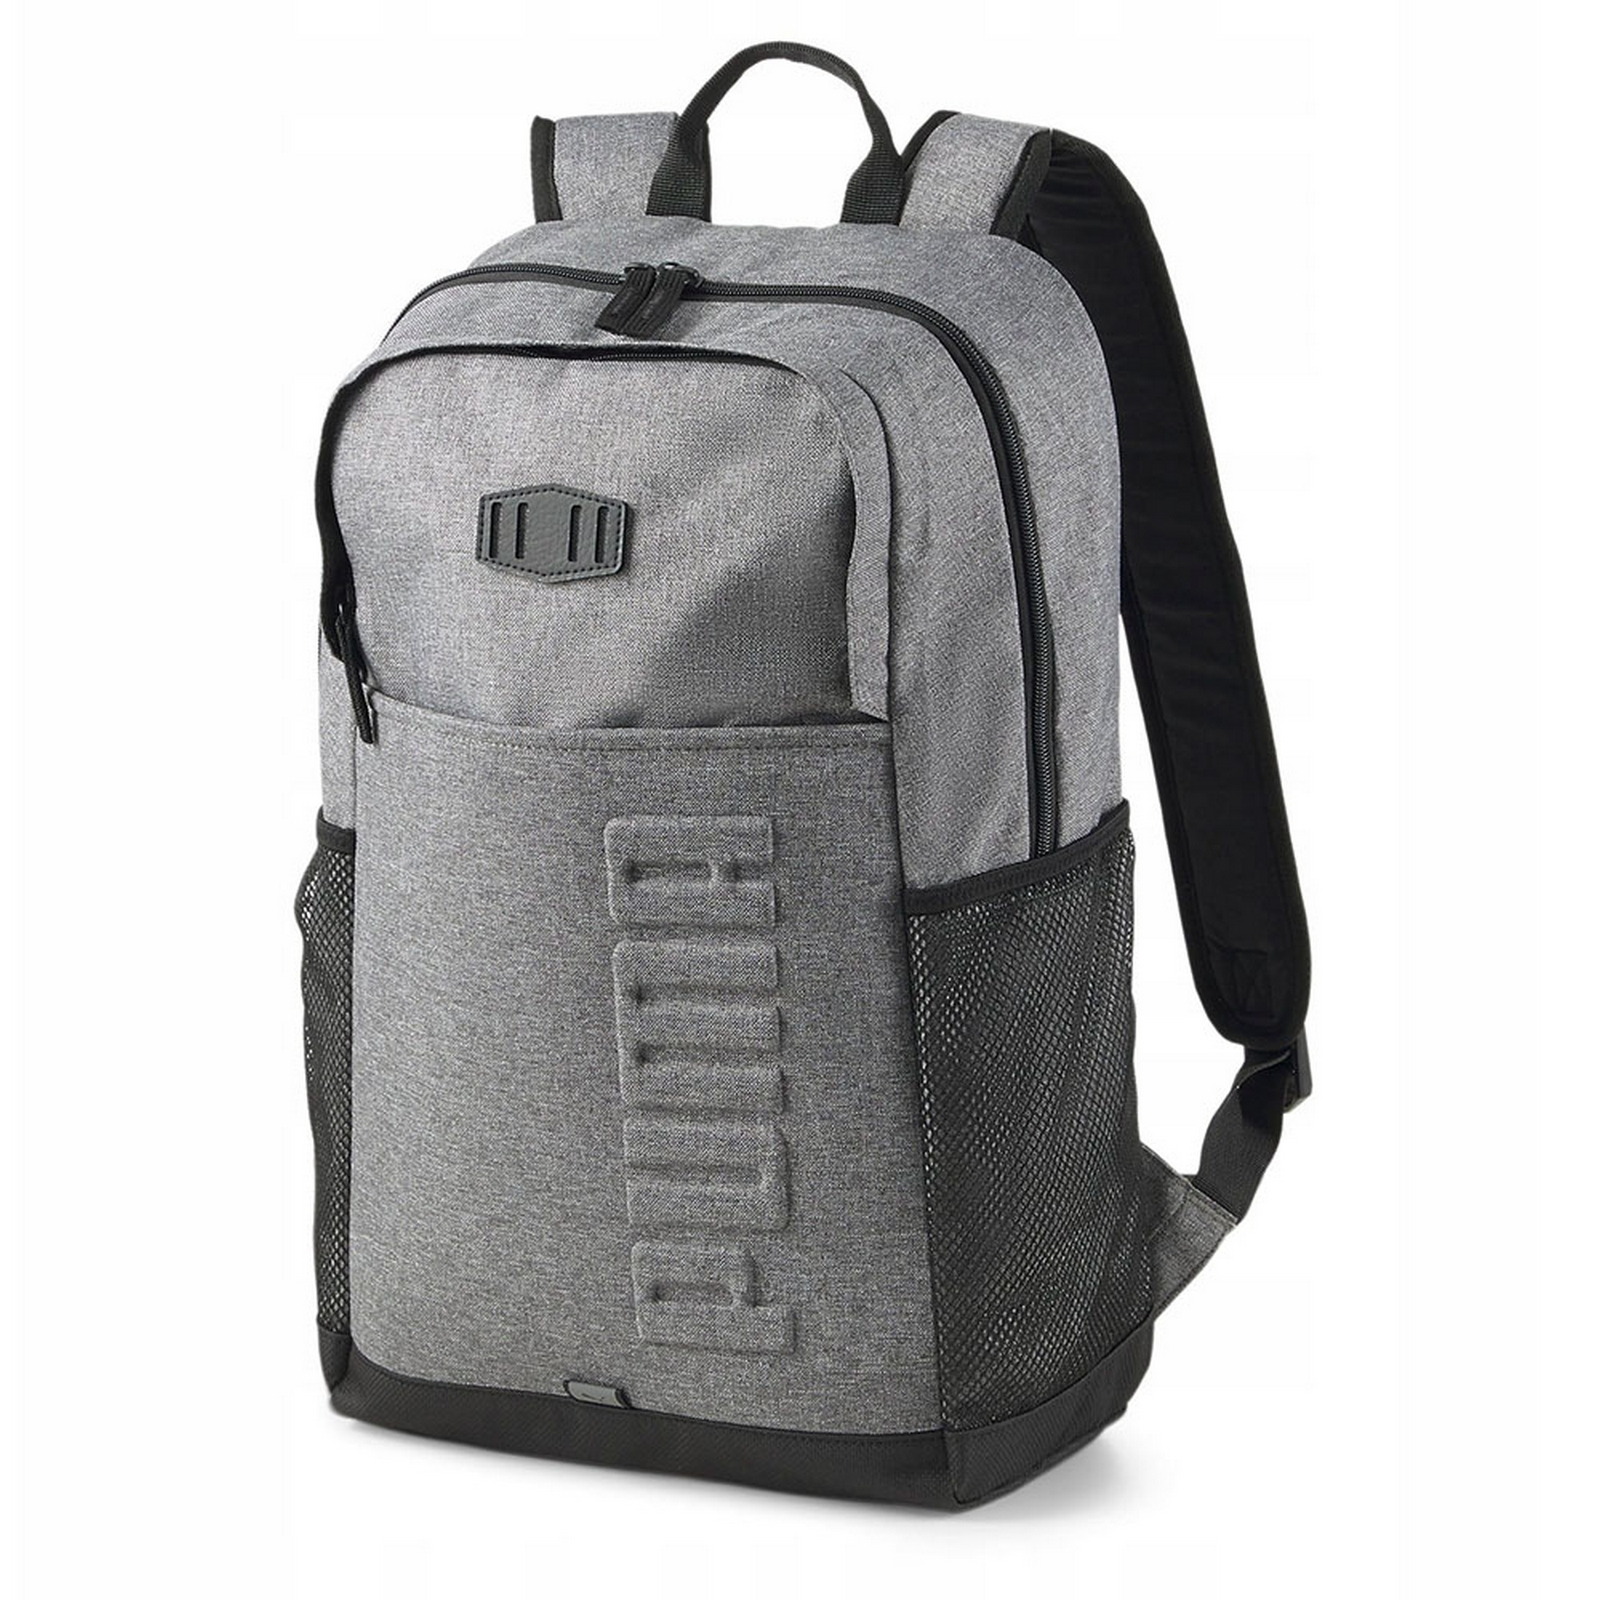   S Backpack,  Puma 07922202 